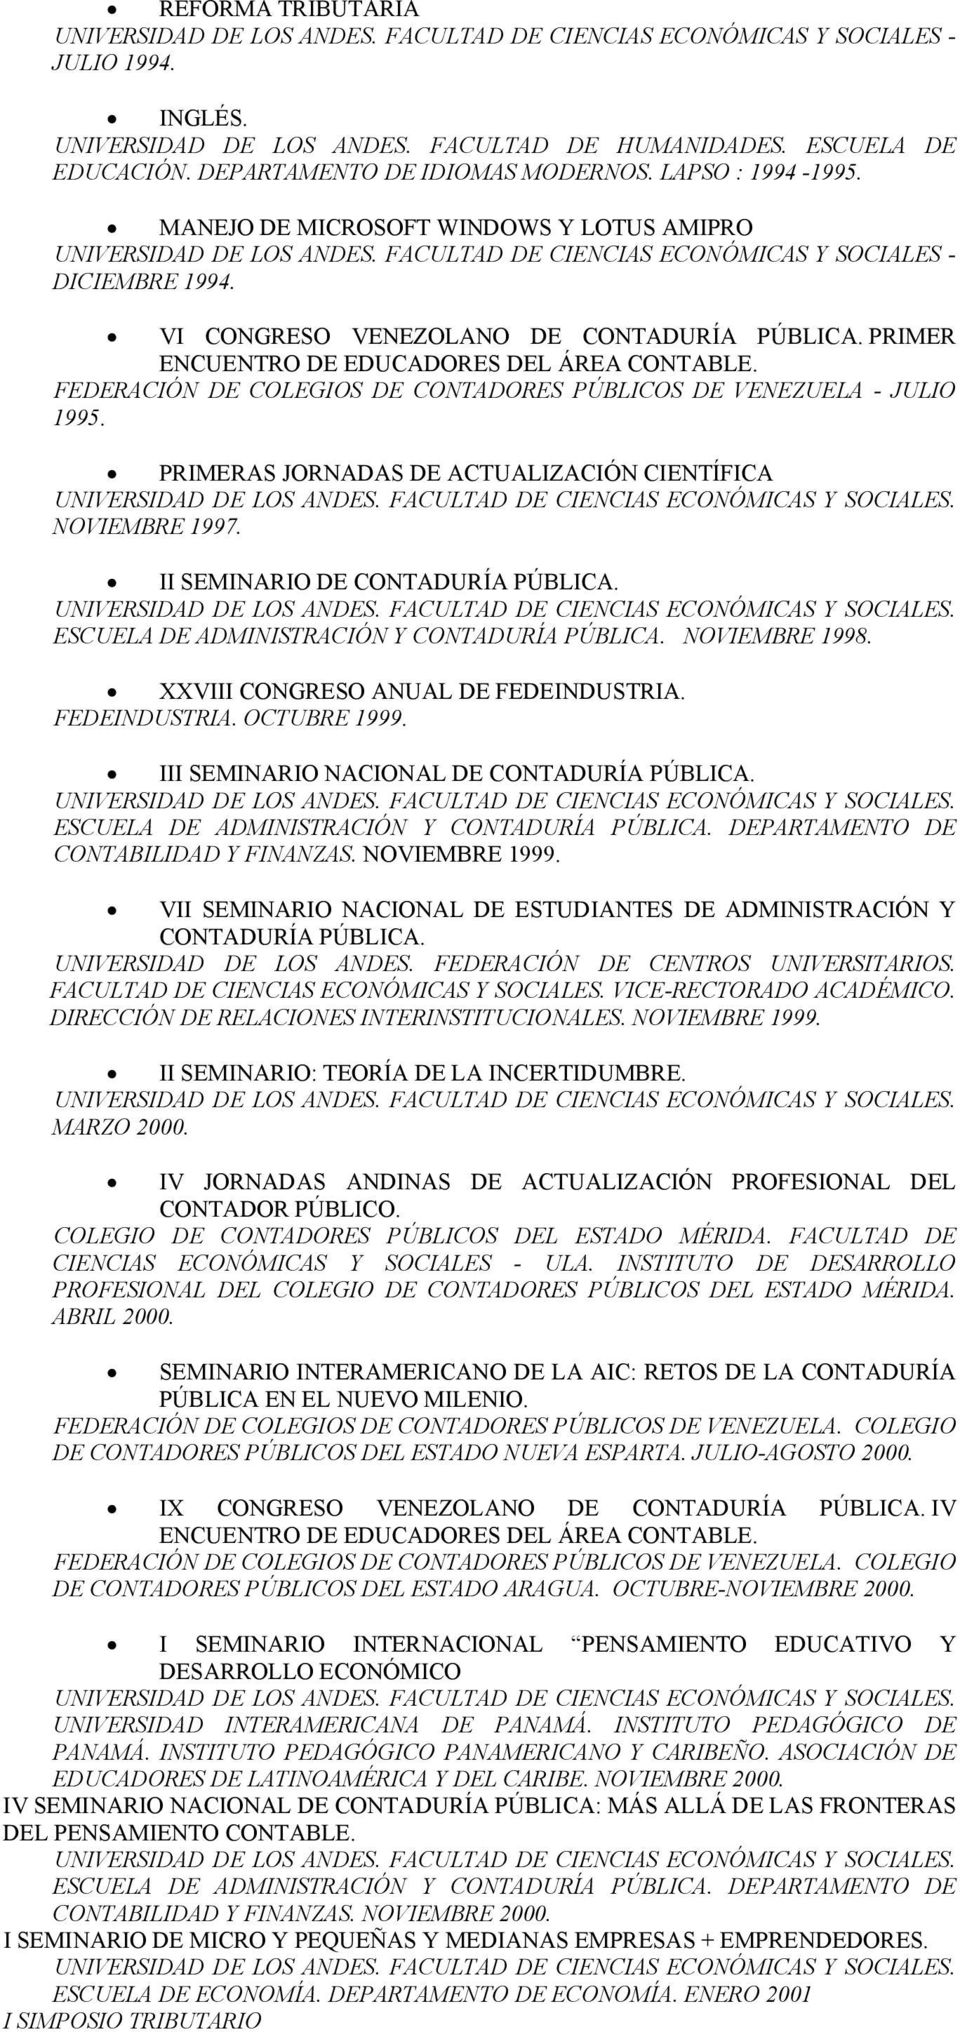 VI CONGRESO VENEZOLANO DE CONTADURÍA PÚBLICA. PRIMER ENCUENTRO DE EDUCADORES DEL ÁREA CONTABLE. FEDERACIÓN DE COLEGIOS DE CONTADORES PÚBLICOS DE VENEZUELA - JULIO 1995.